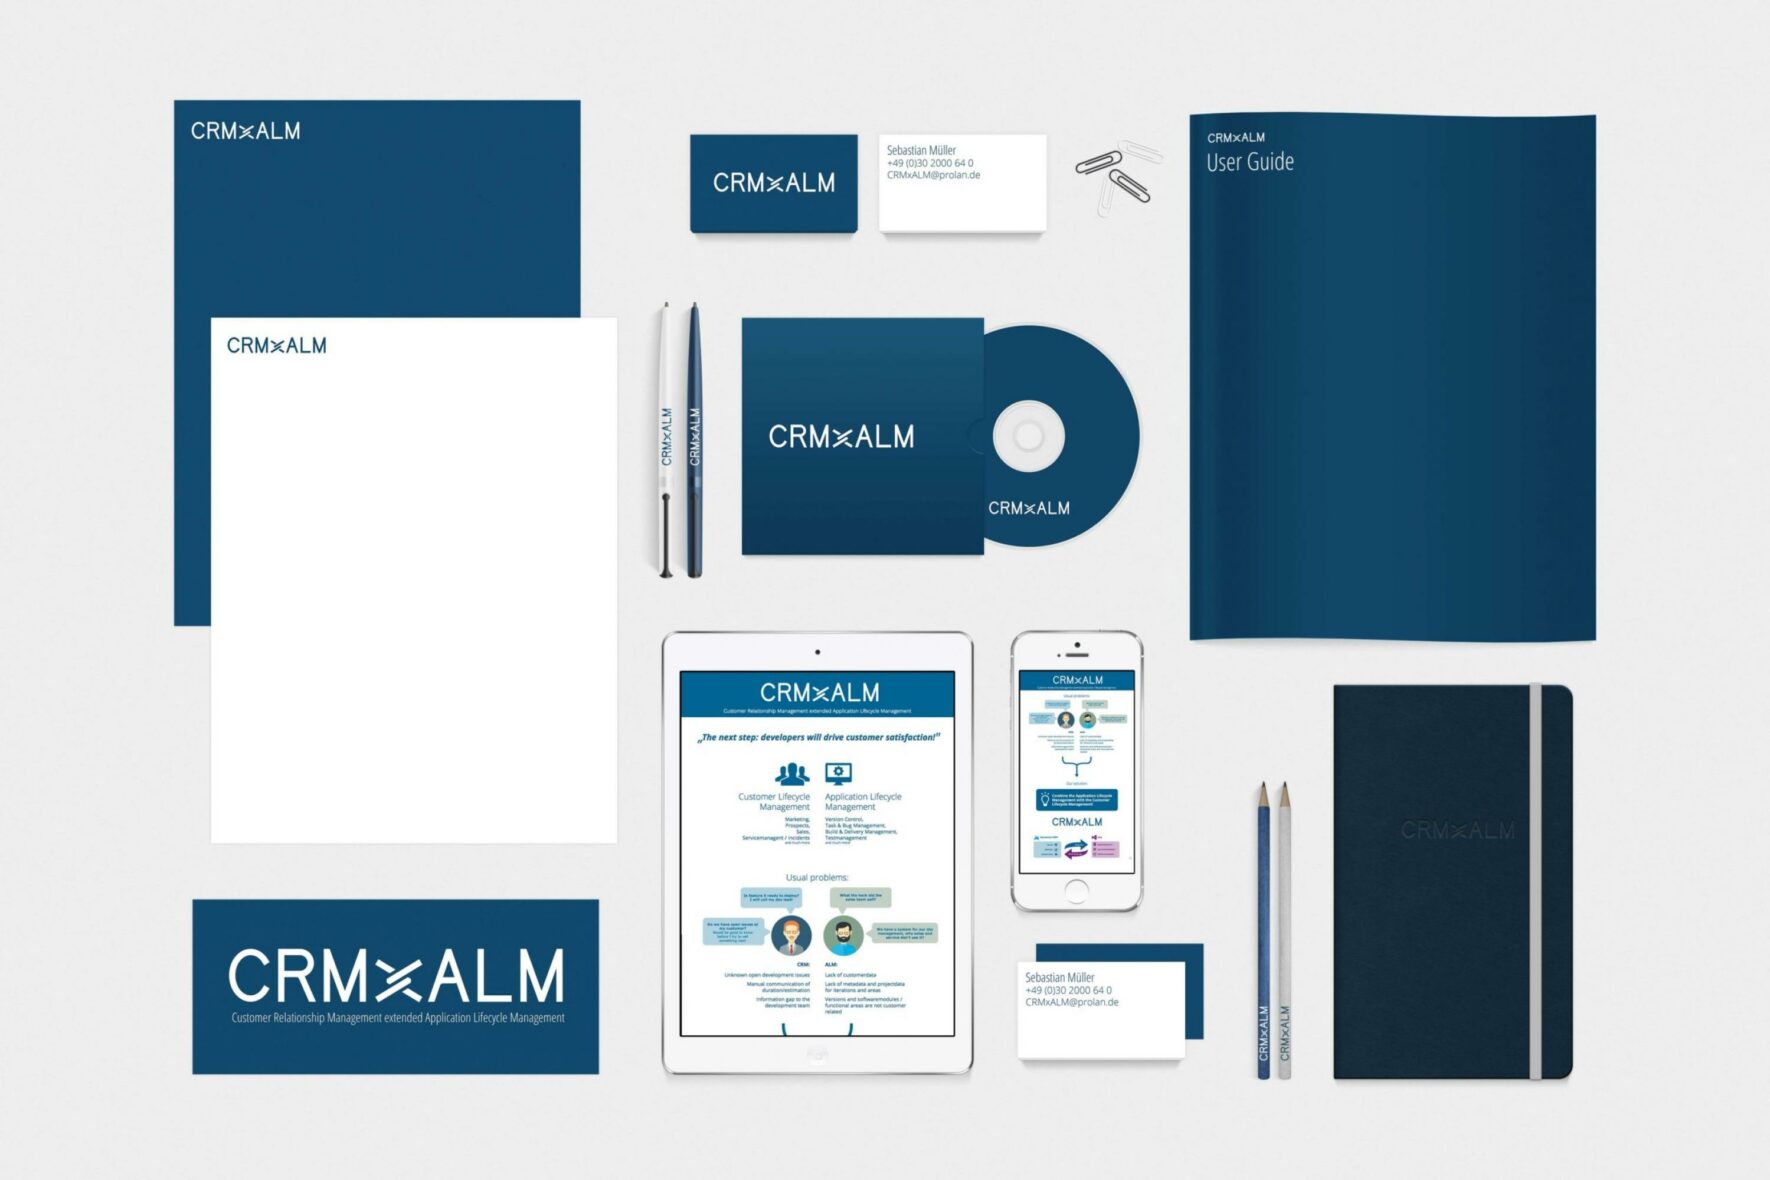 Vorschau-Bild: CRMxALM – Corporate Design